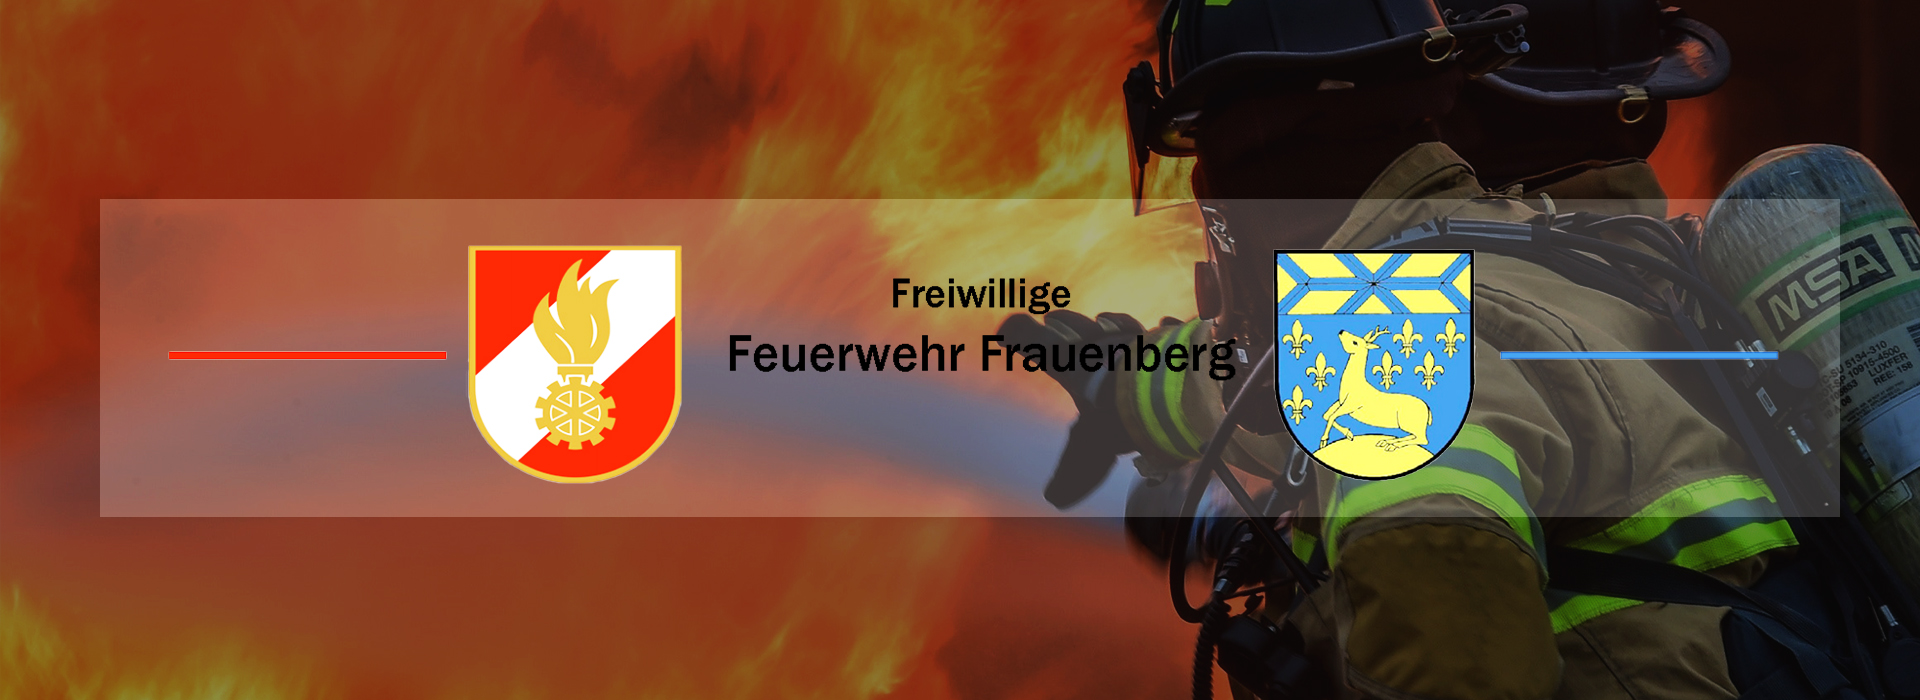 Freiwillige Feuerwehr Frauenberg